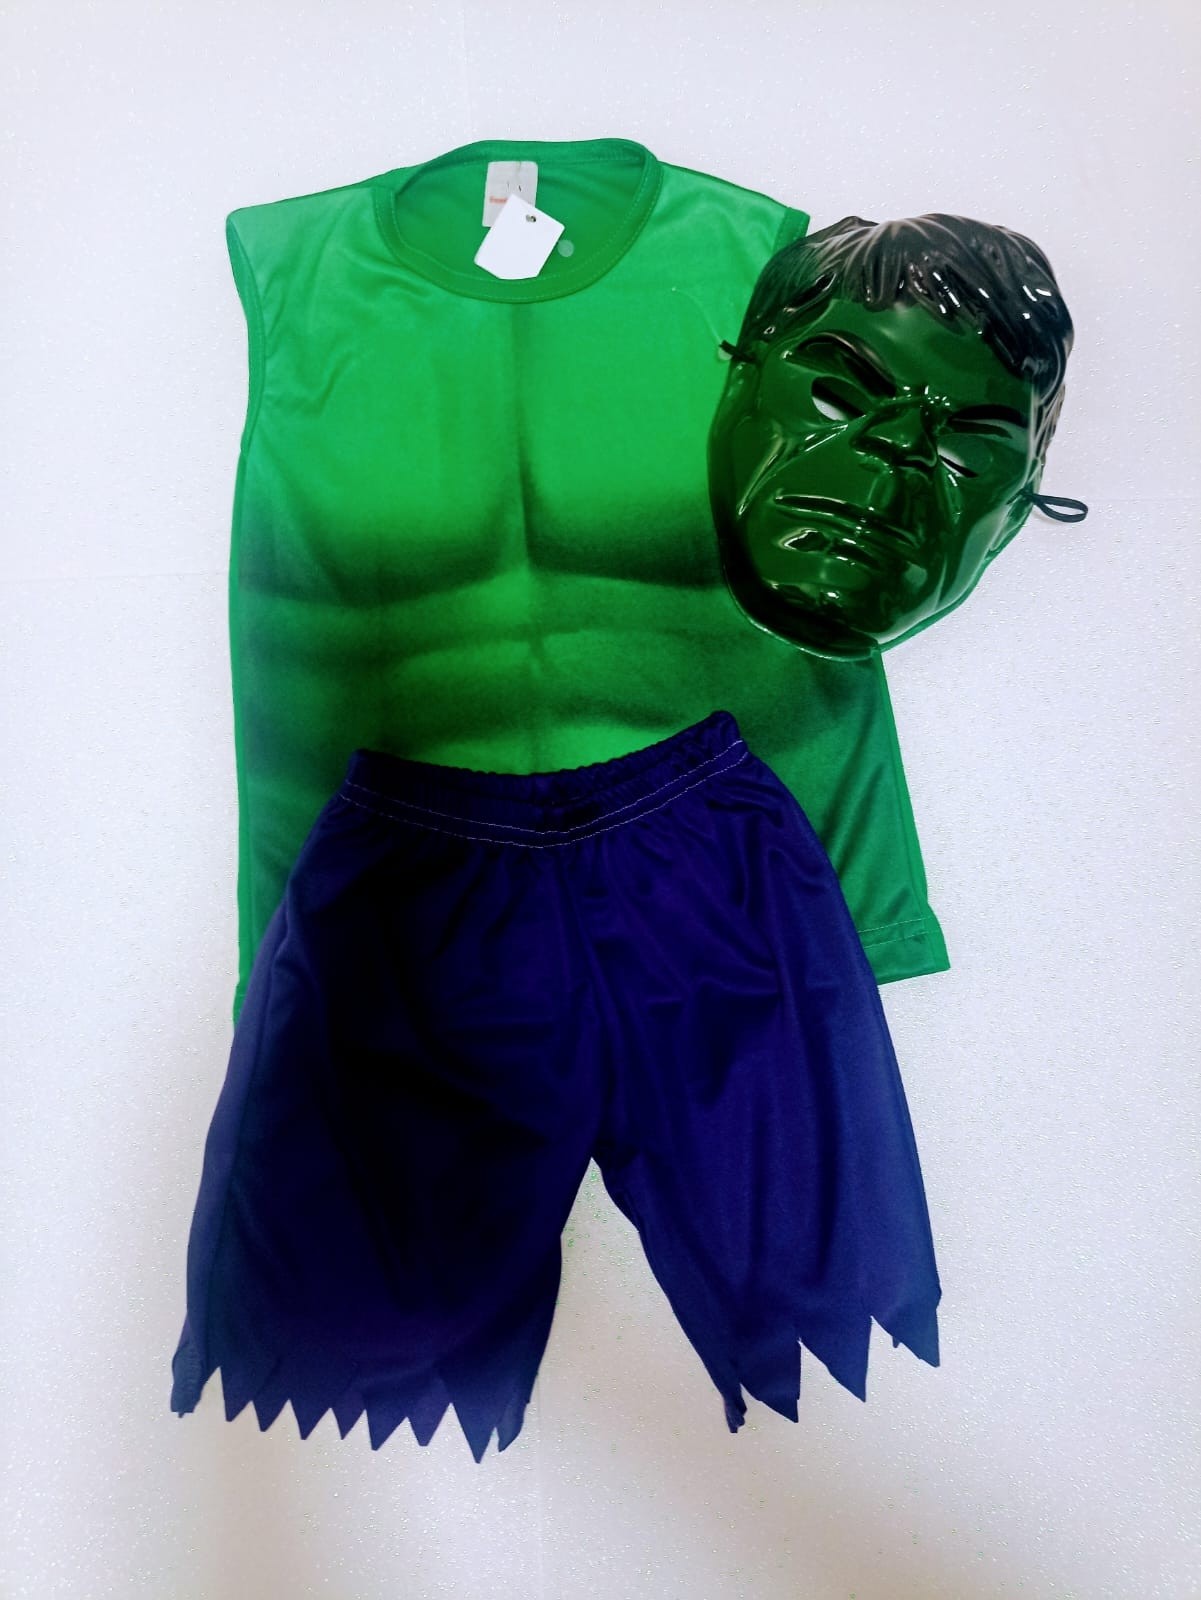 Fantasia IE Hulk Infantil P